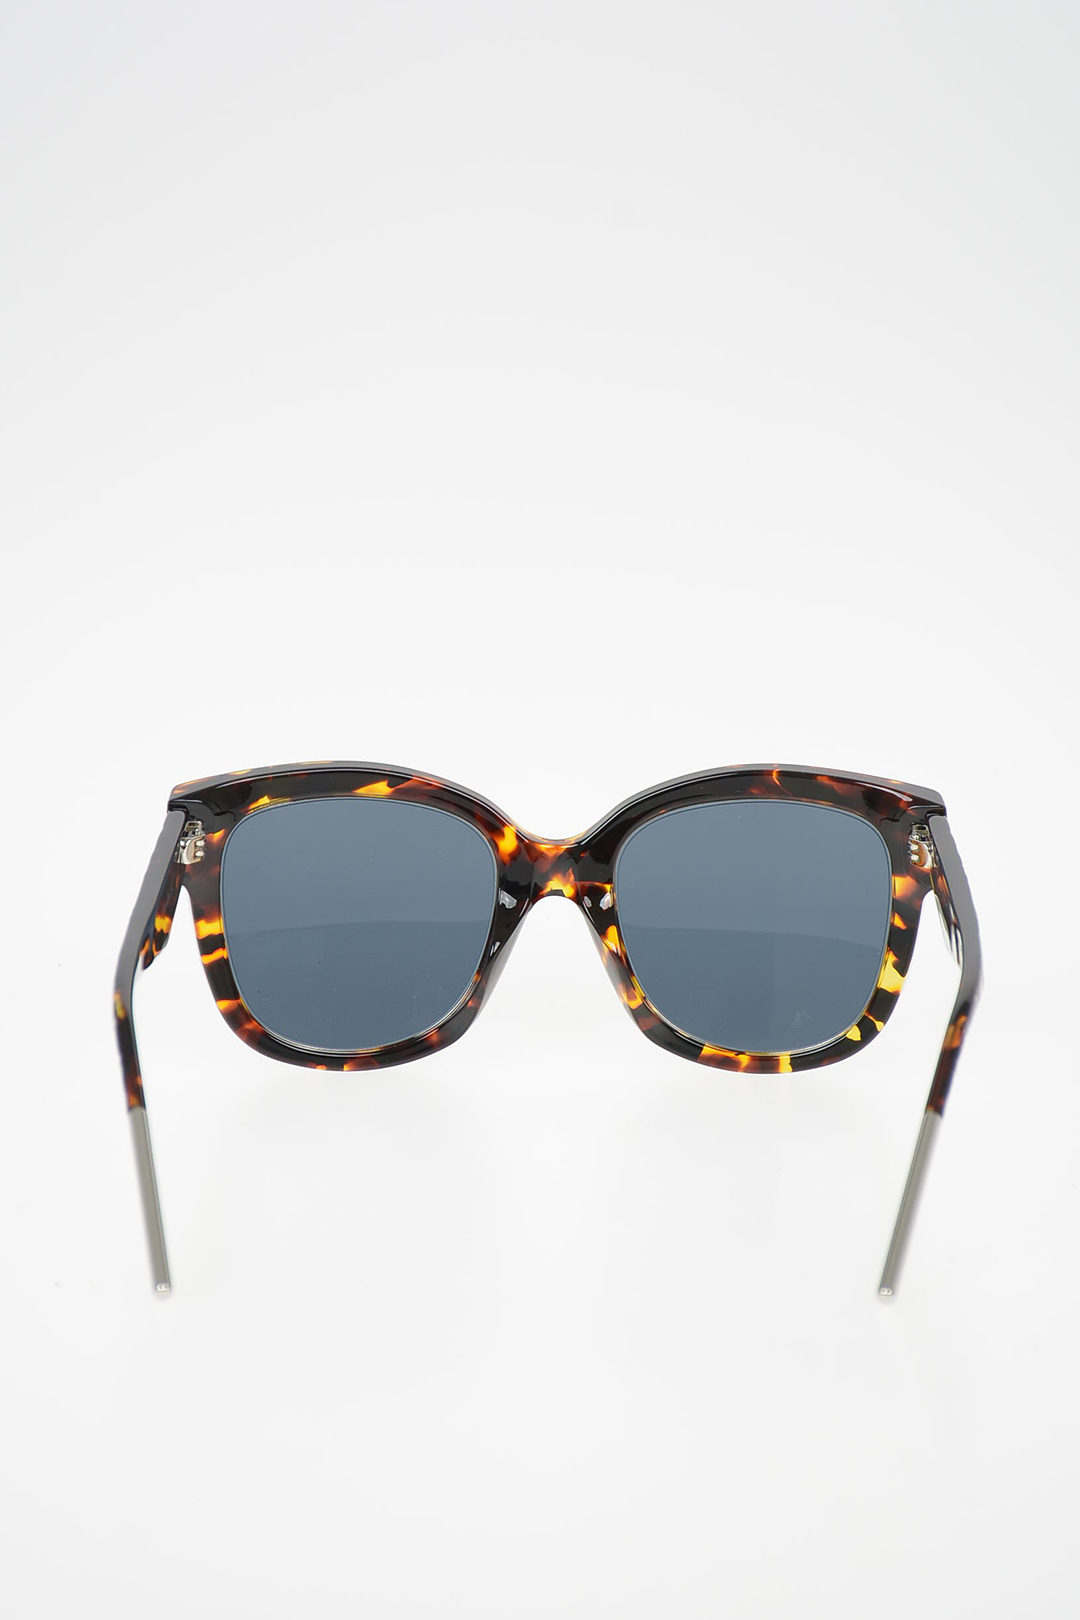 square dior sunglasses